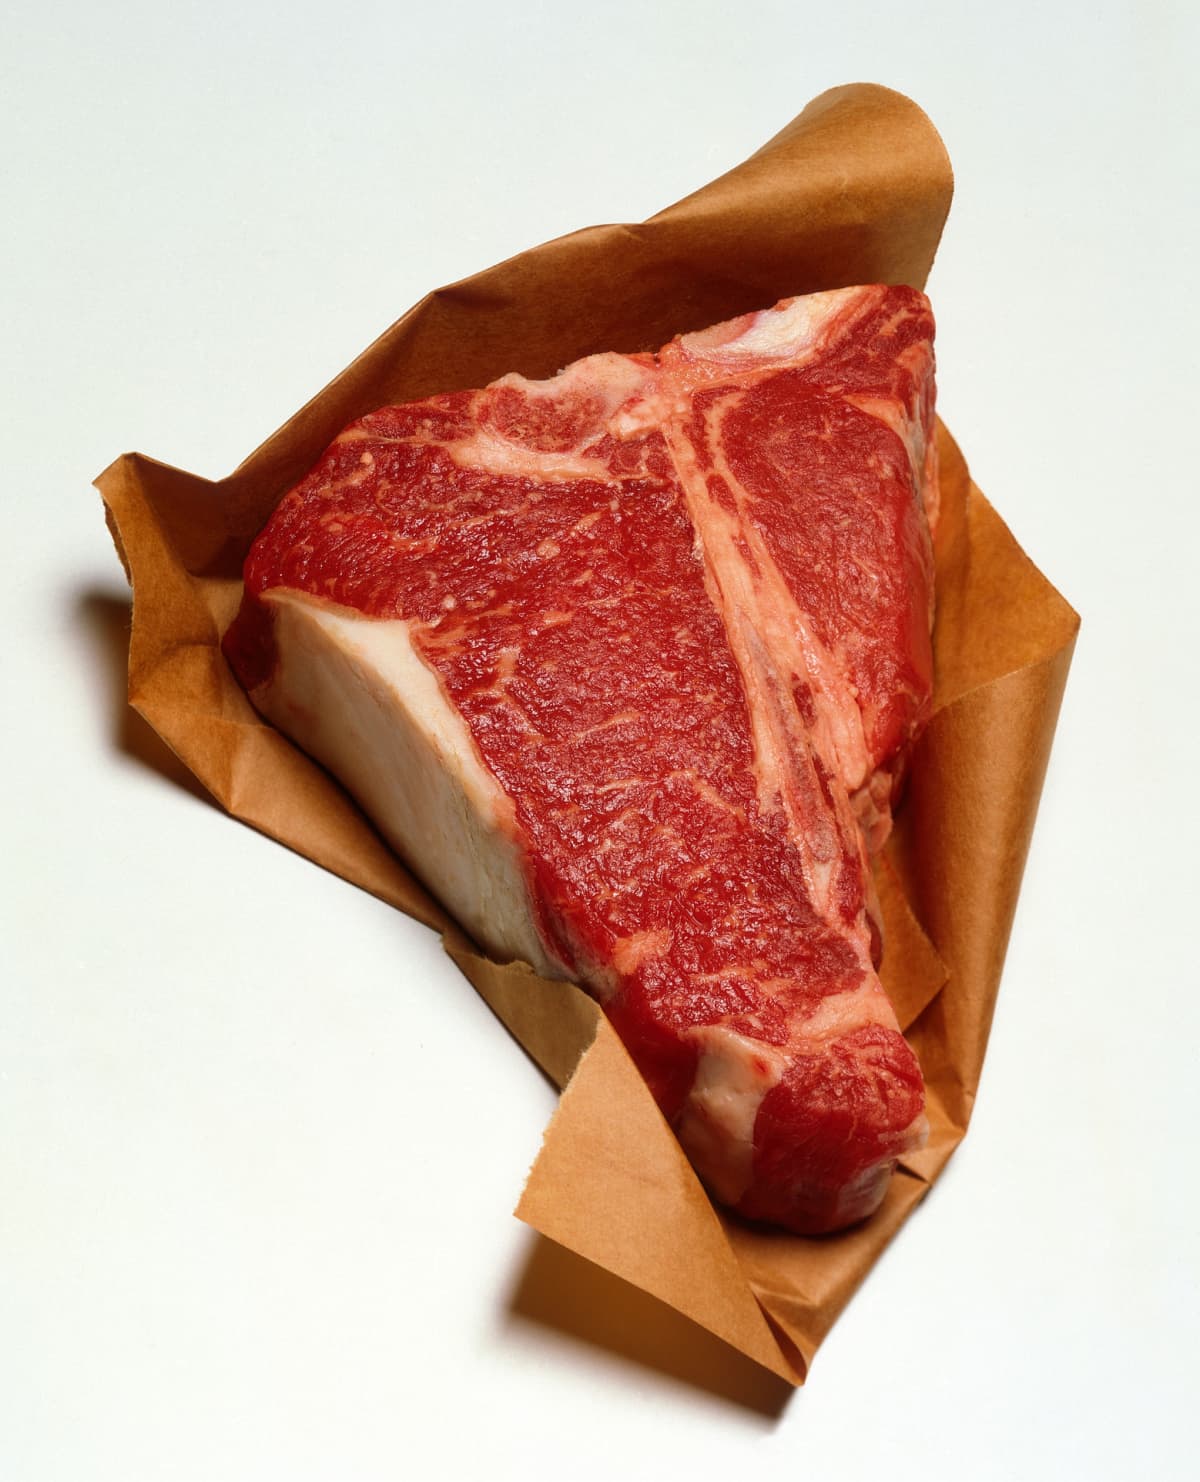 Raw T-bone steak on brown paper.